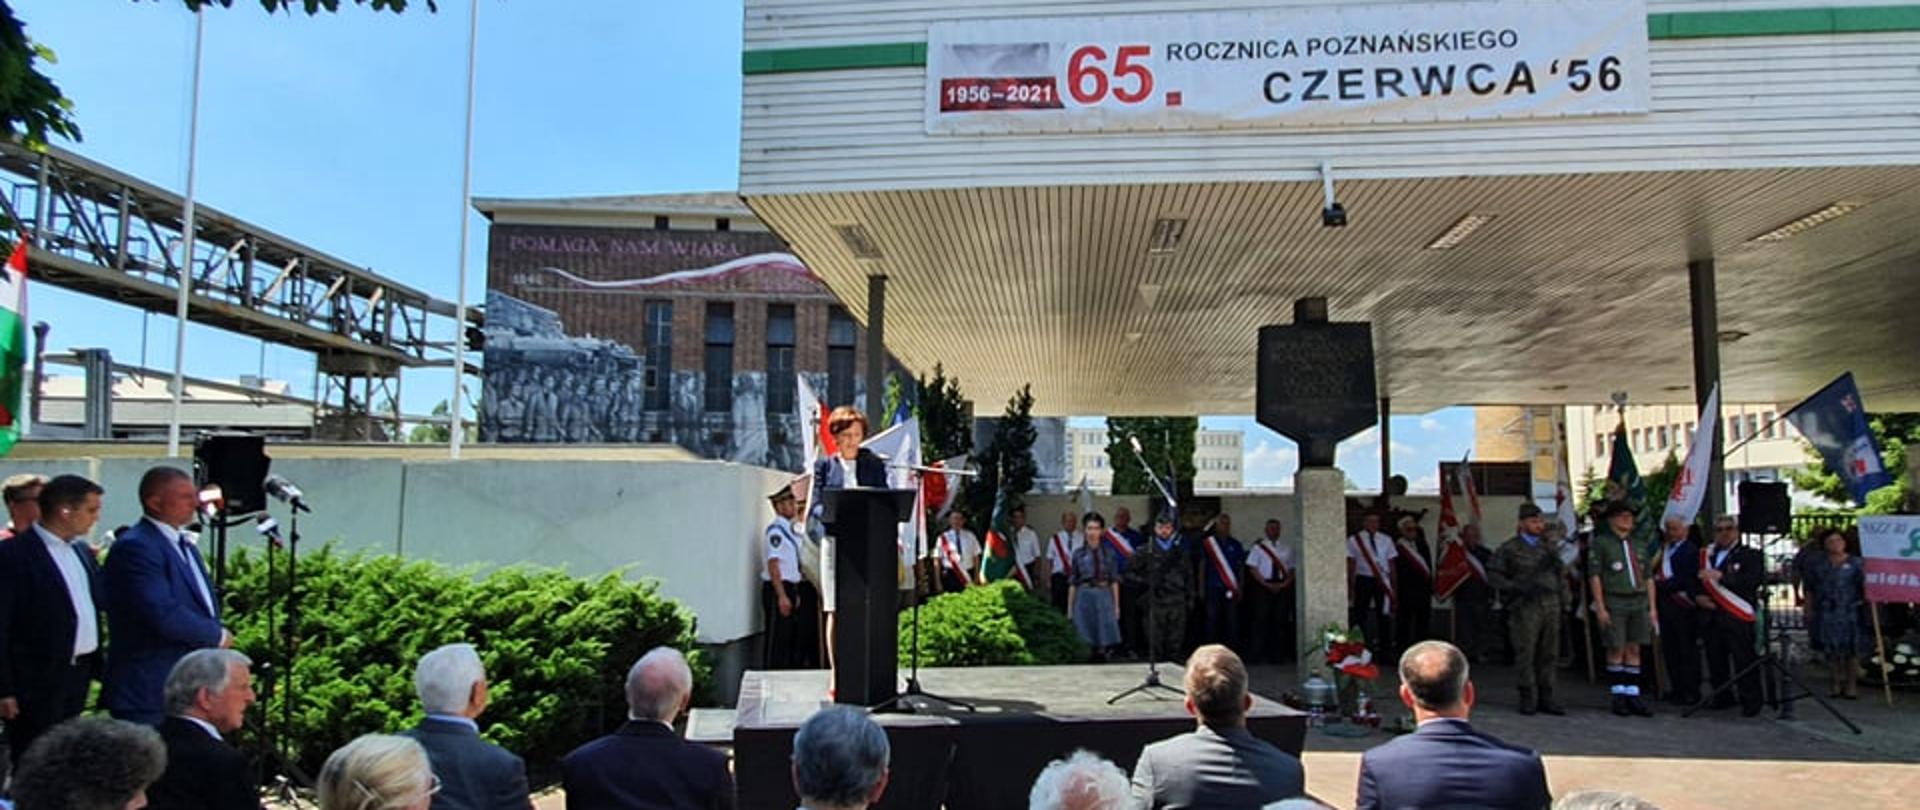 Obchody 65. rocznicy Powstania Poznańskiego Czerwca